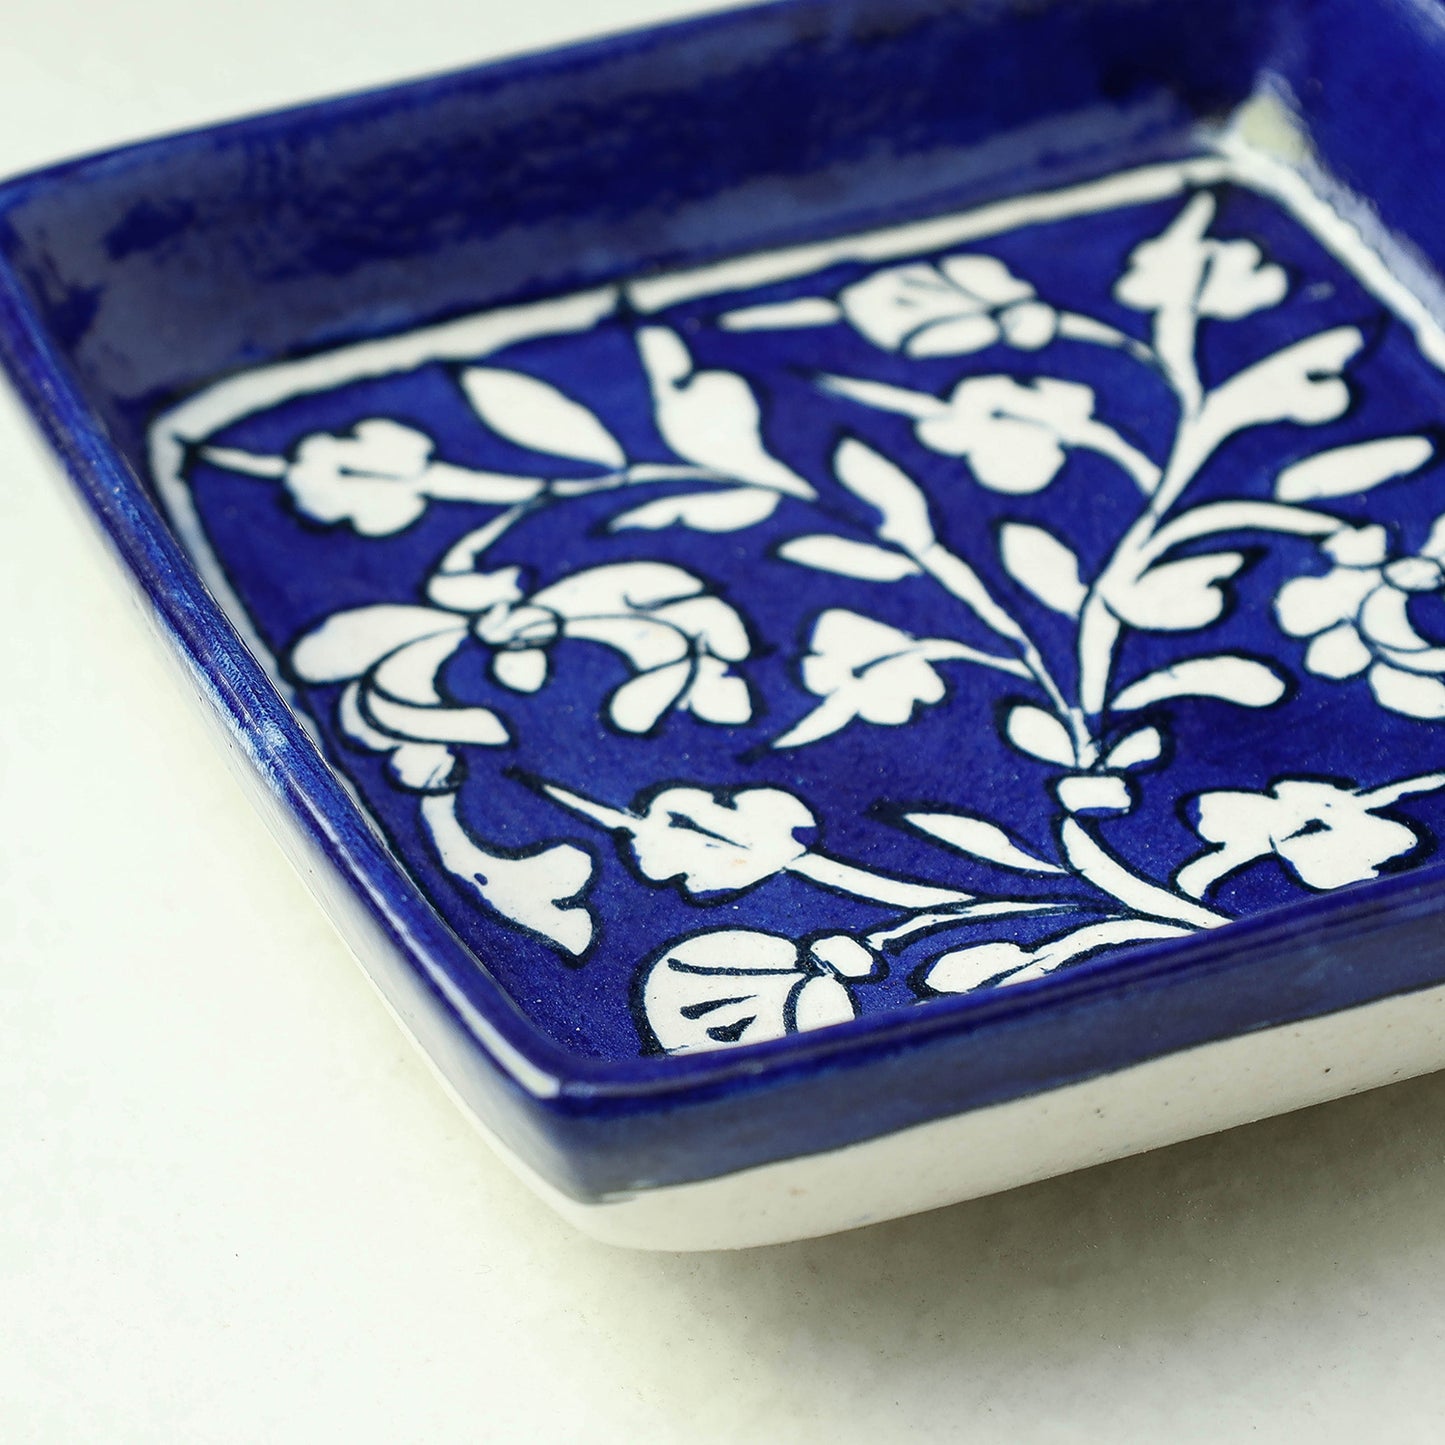 Original Blue Pottery Ceramic Square Tray (5 x 5 in)